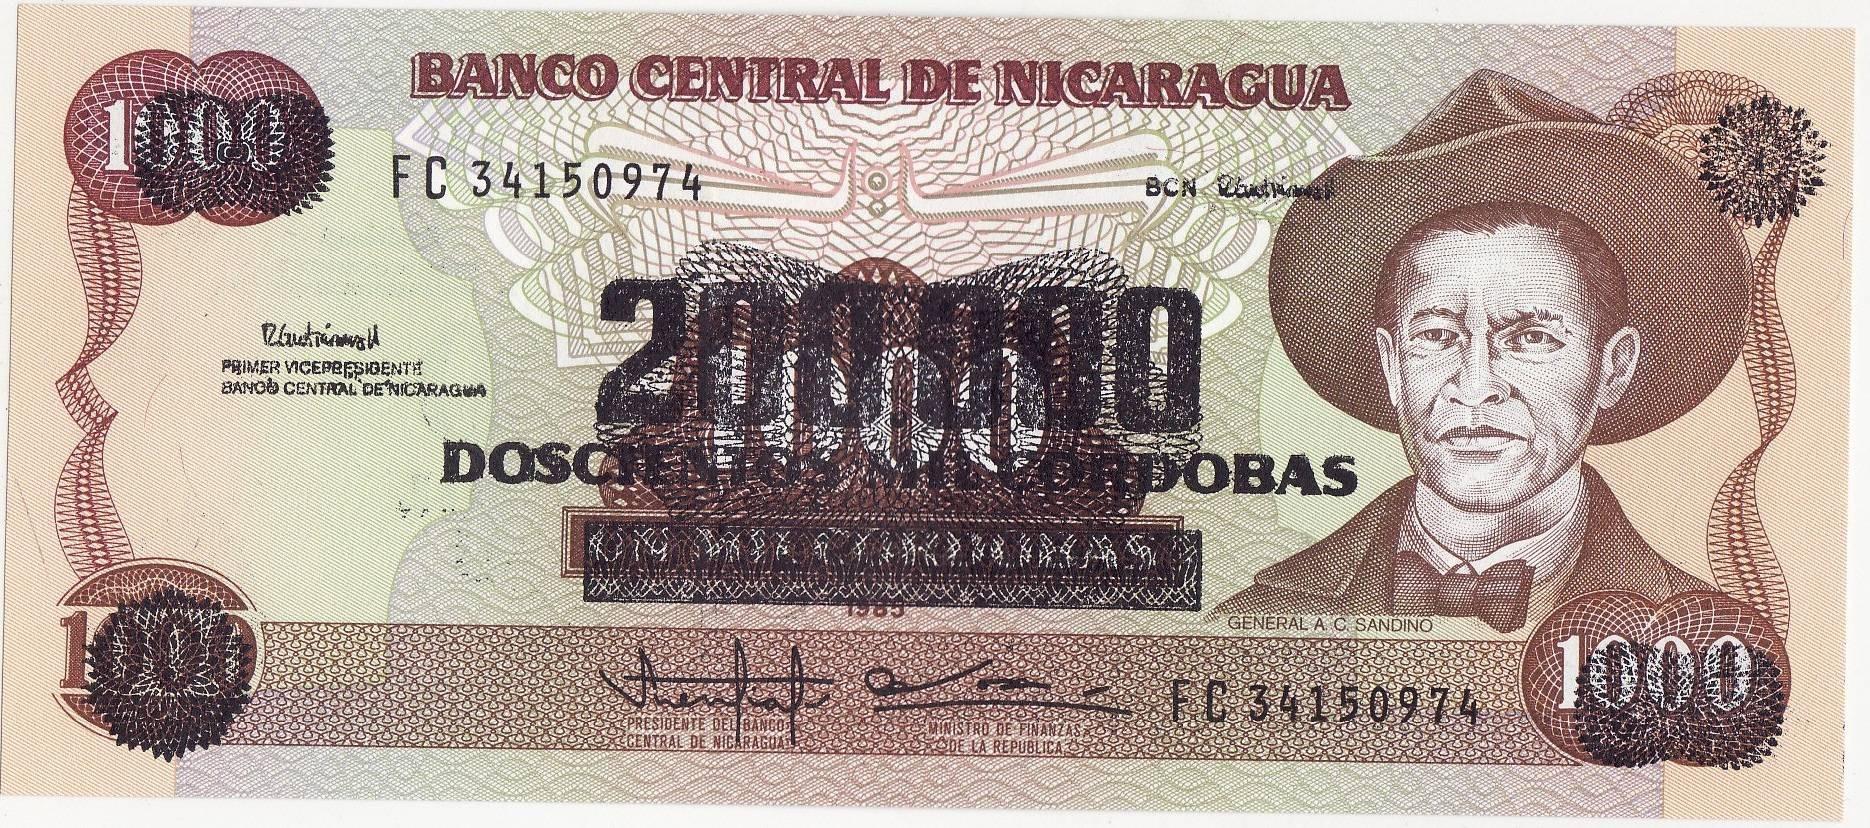 200 000 Cordobas (overprinted) Nicaragua 1990